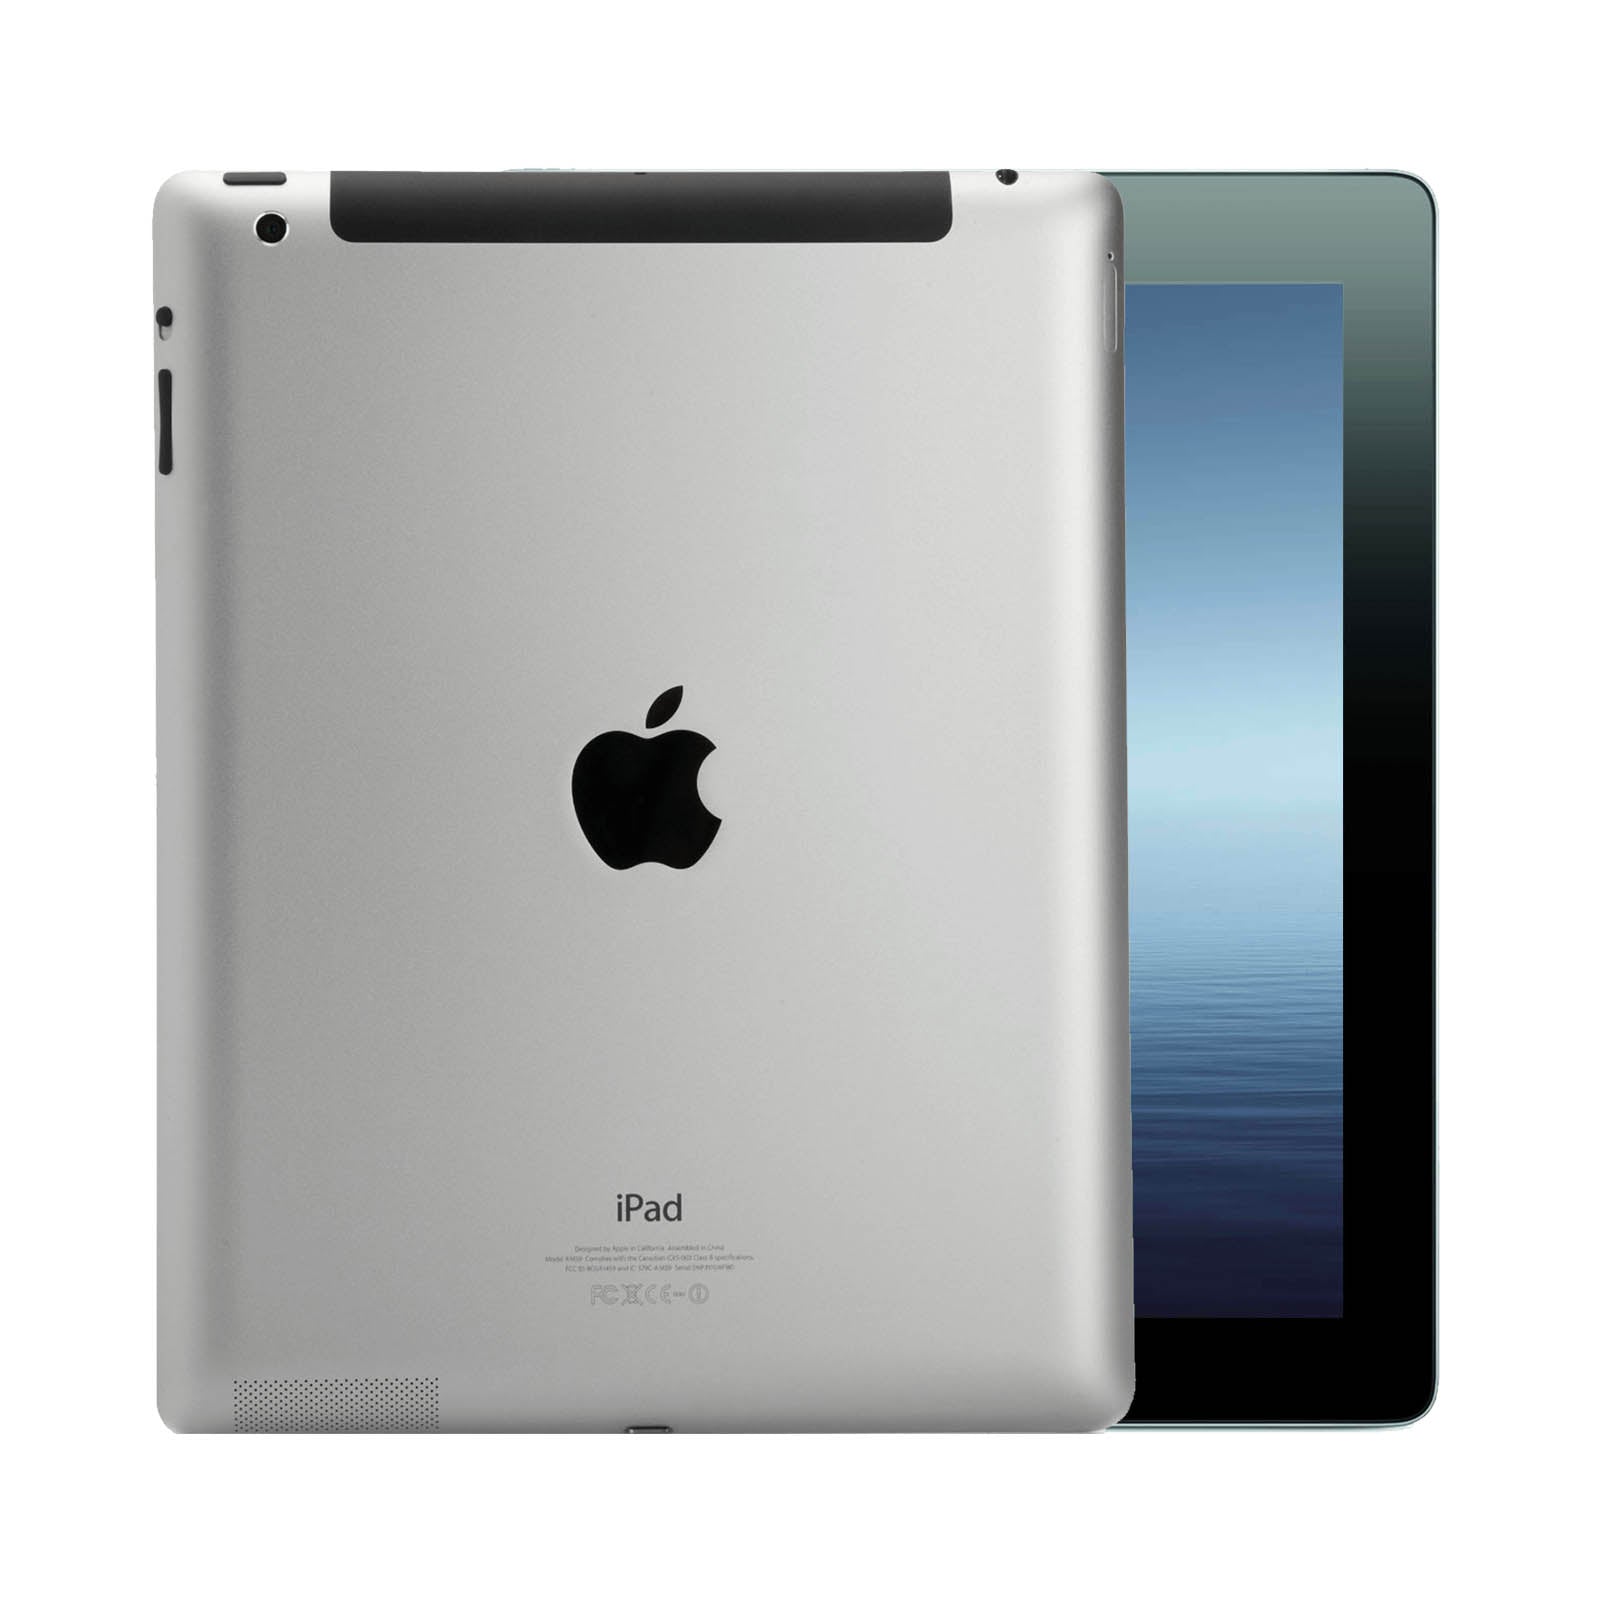 Apple iPad 3 64GB Black Good - Unlocked